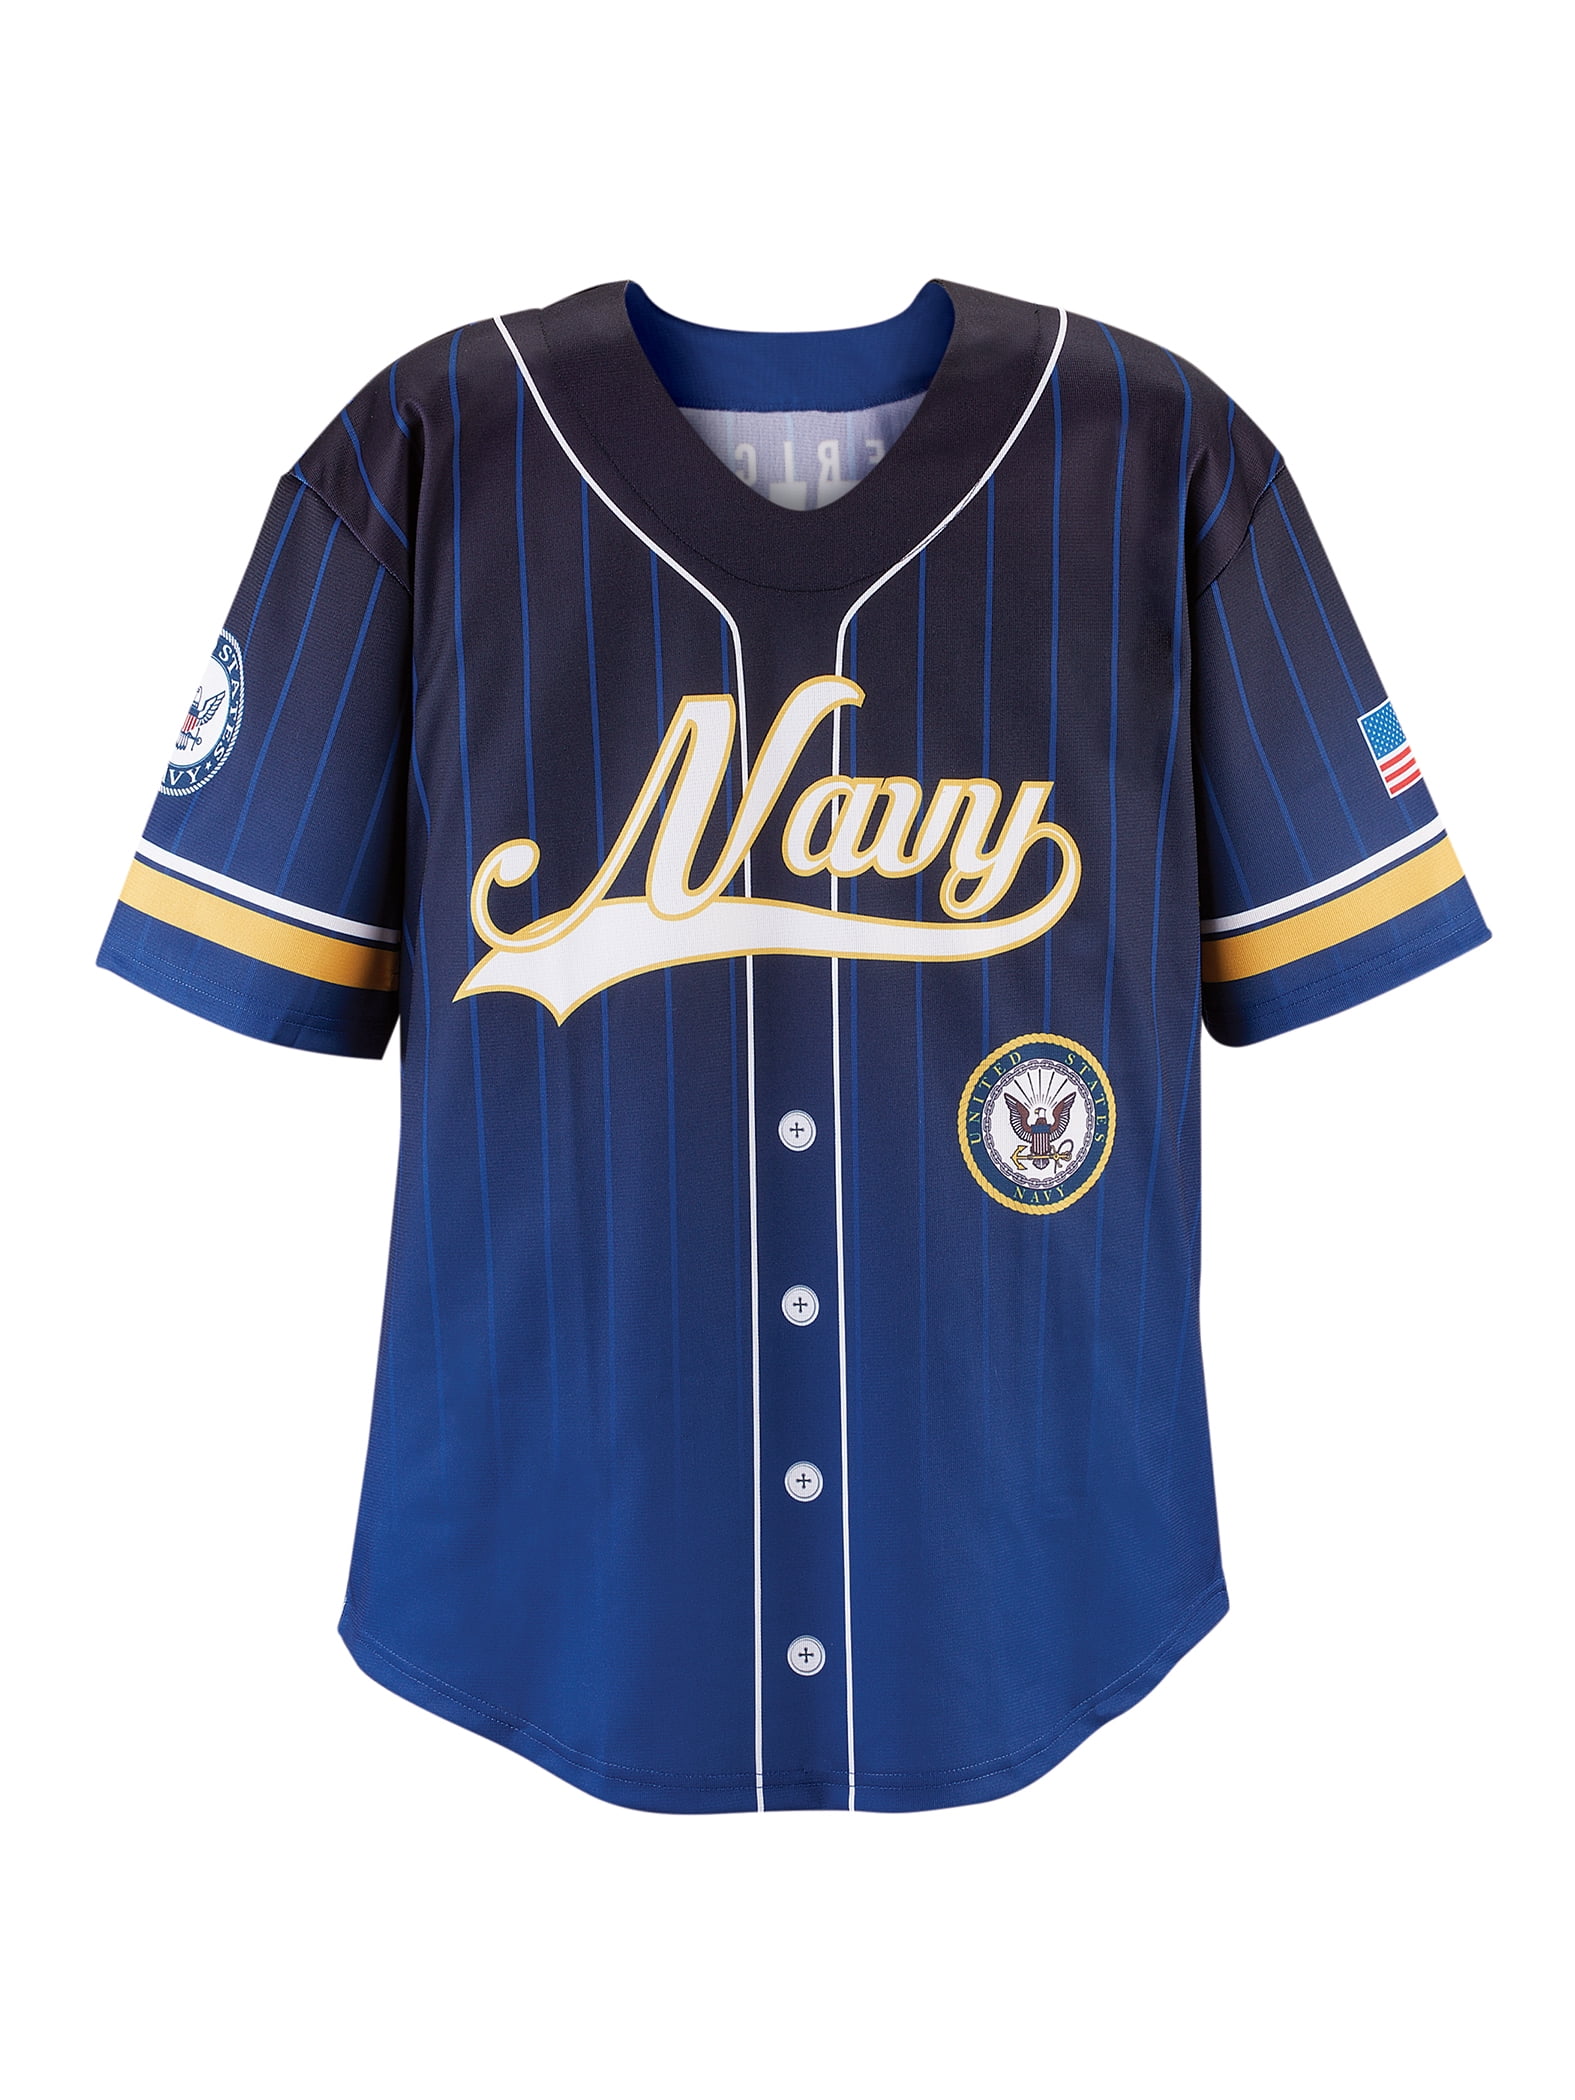 Baseball Jersey - Navy Blue | Bluecoats